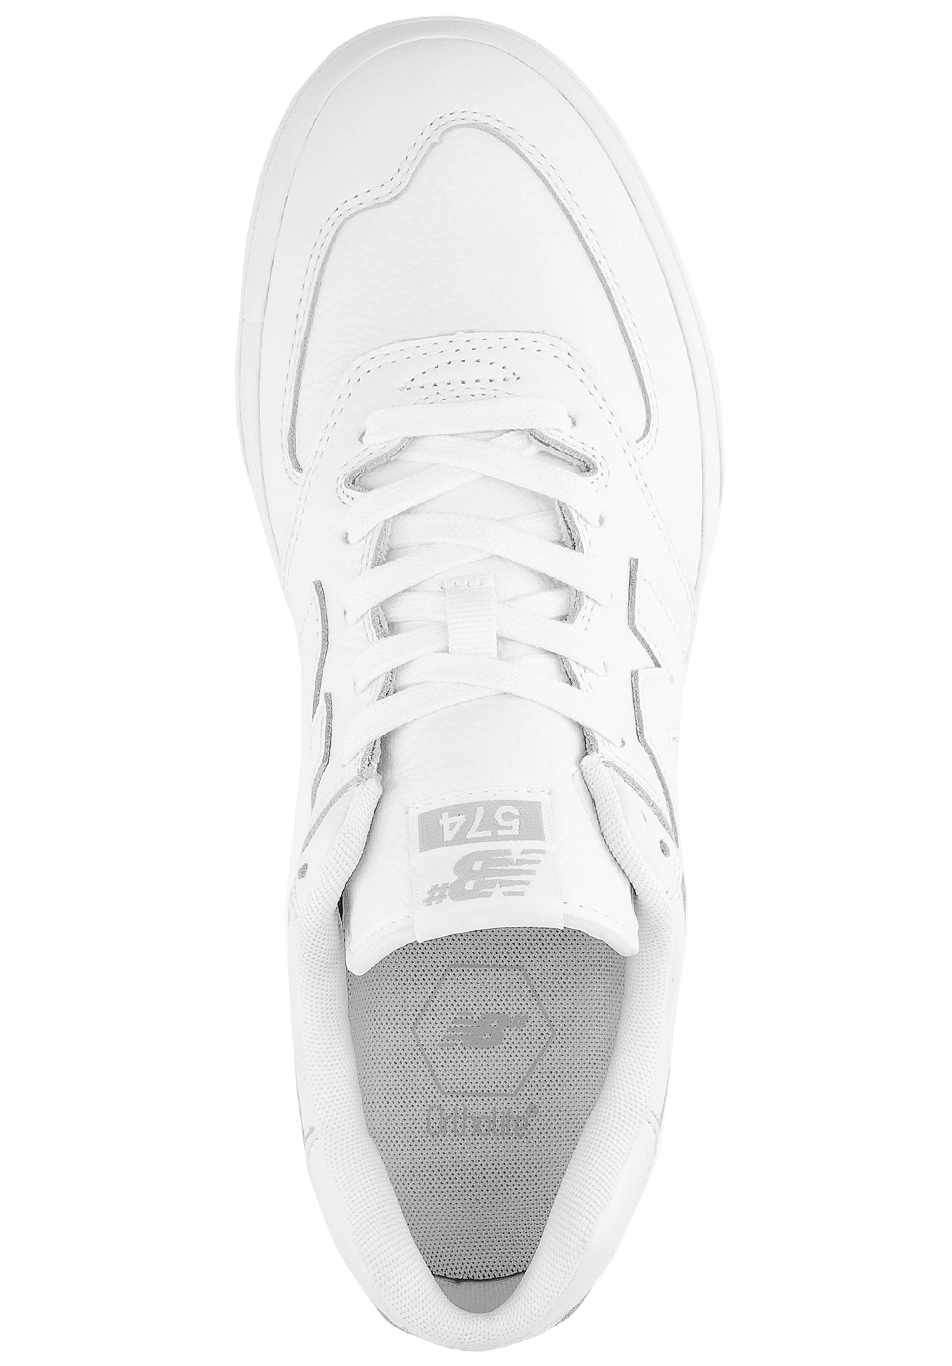 NM574VCG Vulc Shoe White